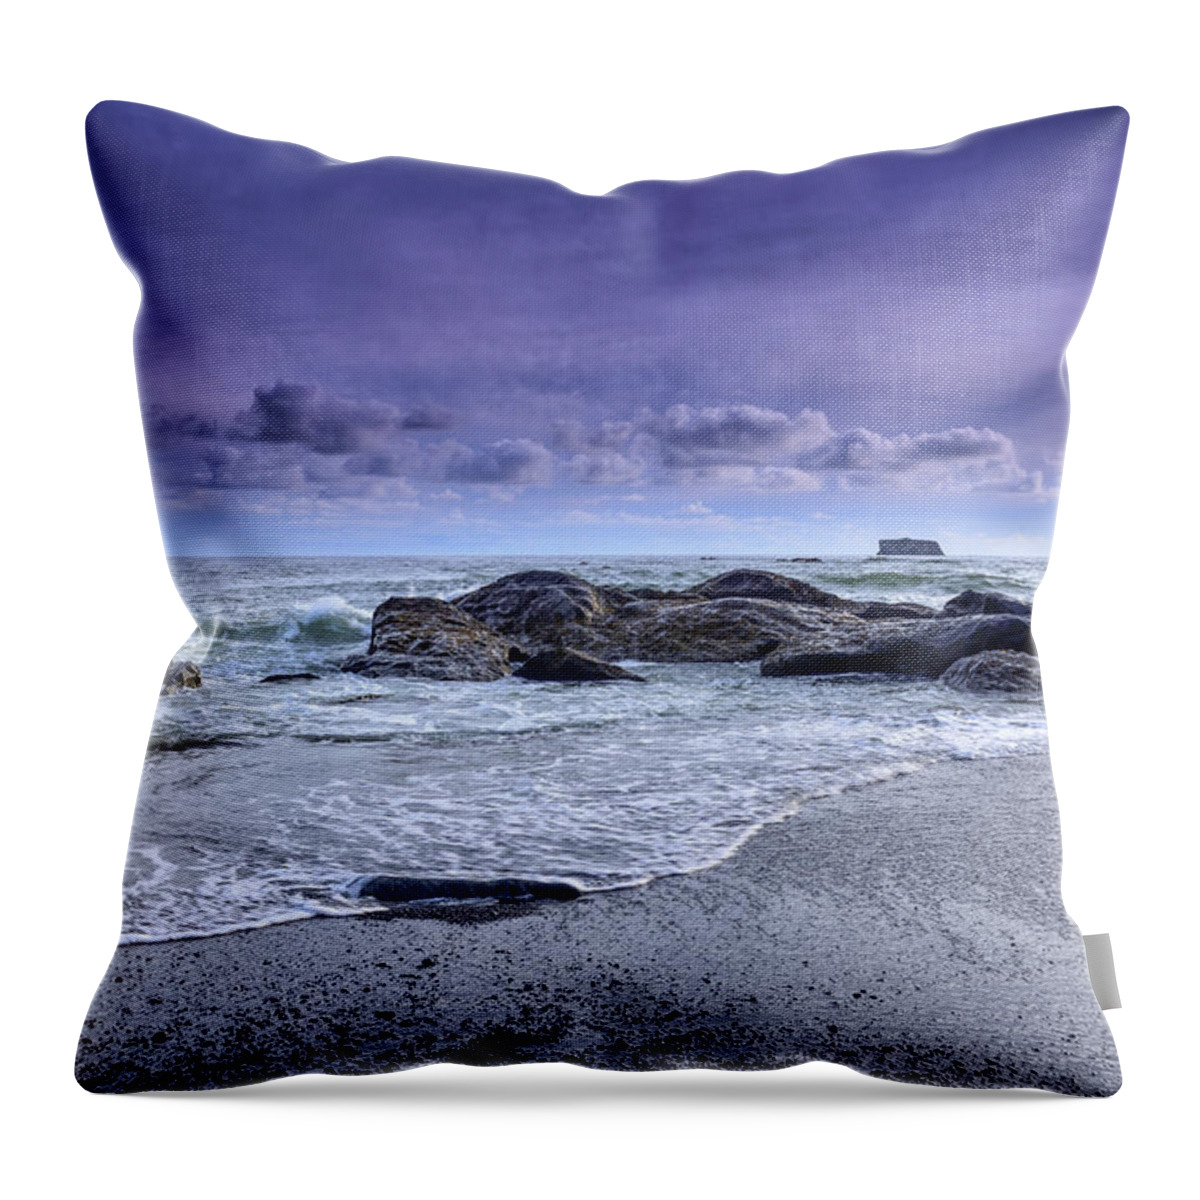 Rialto Beach Throw Pillow featuring the photograph Rialto Beach Drama by Spencer McDonald